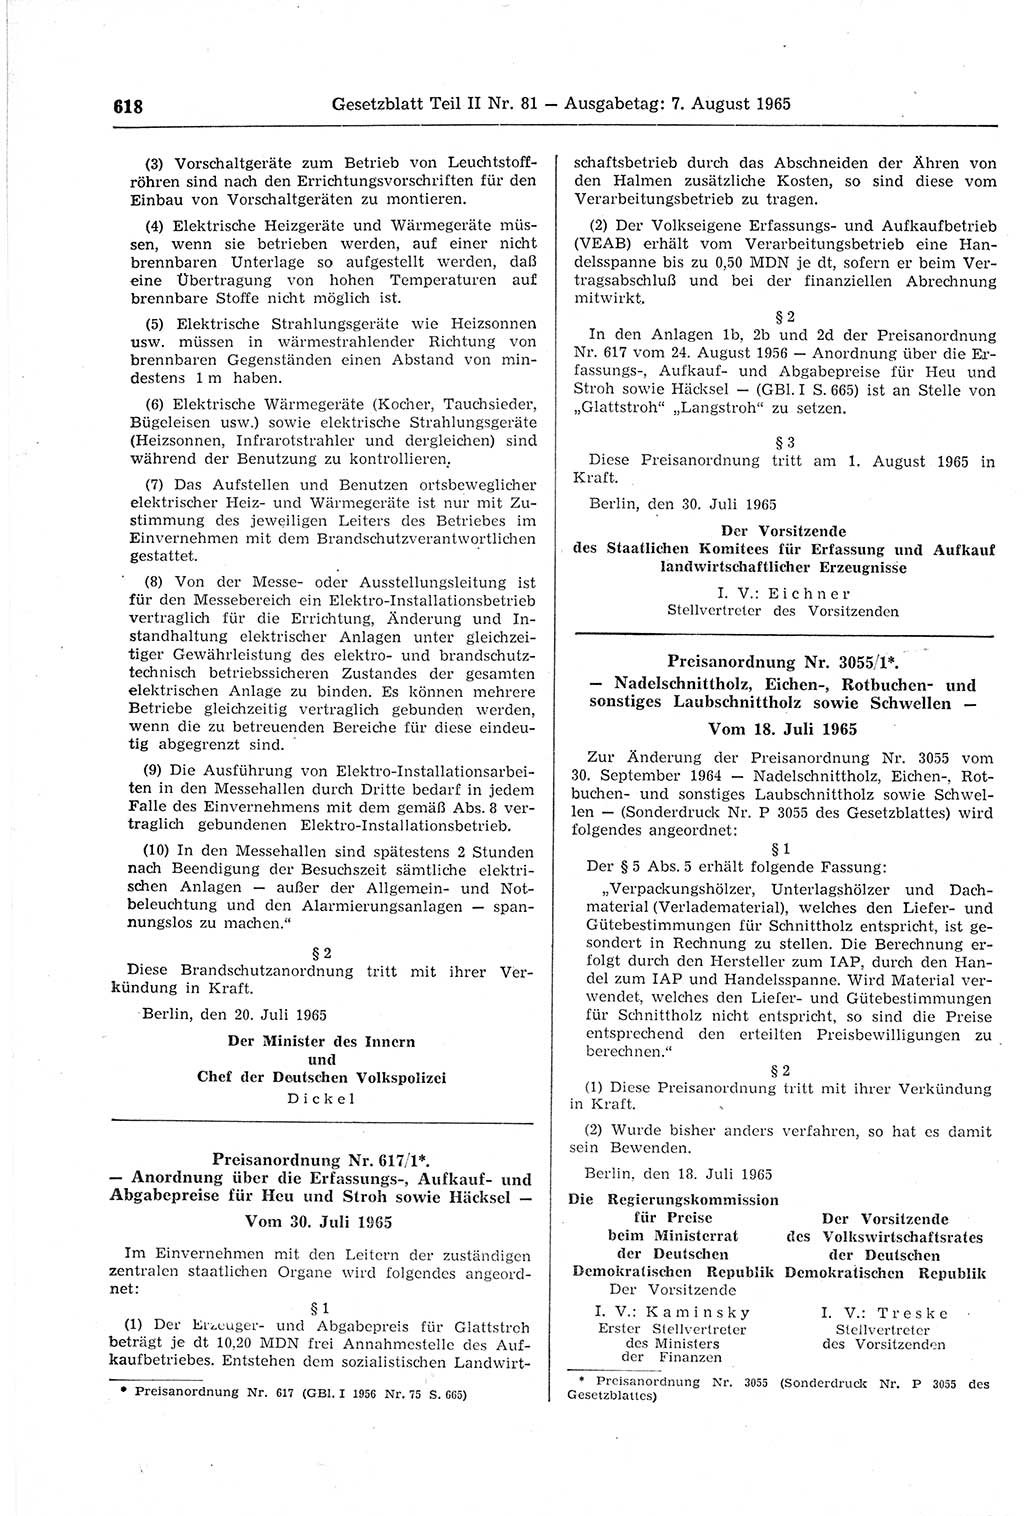 Gesetzblatt (GBl.) der Deutschen Demokratischen Republik (DDR) Teil ⅠⅠ 1965, Seite 618 (GBl. DDR ⅠⅠ 1965, S. 618)